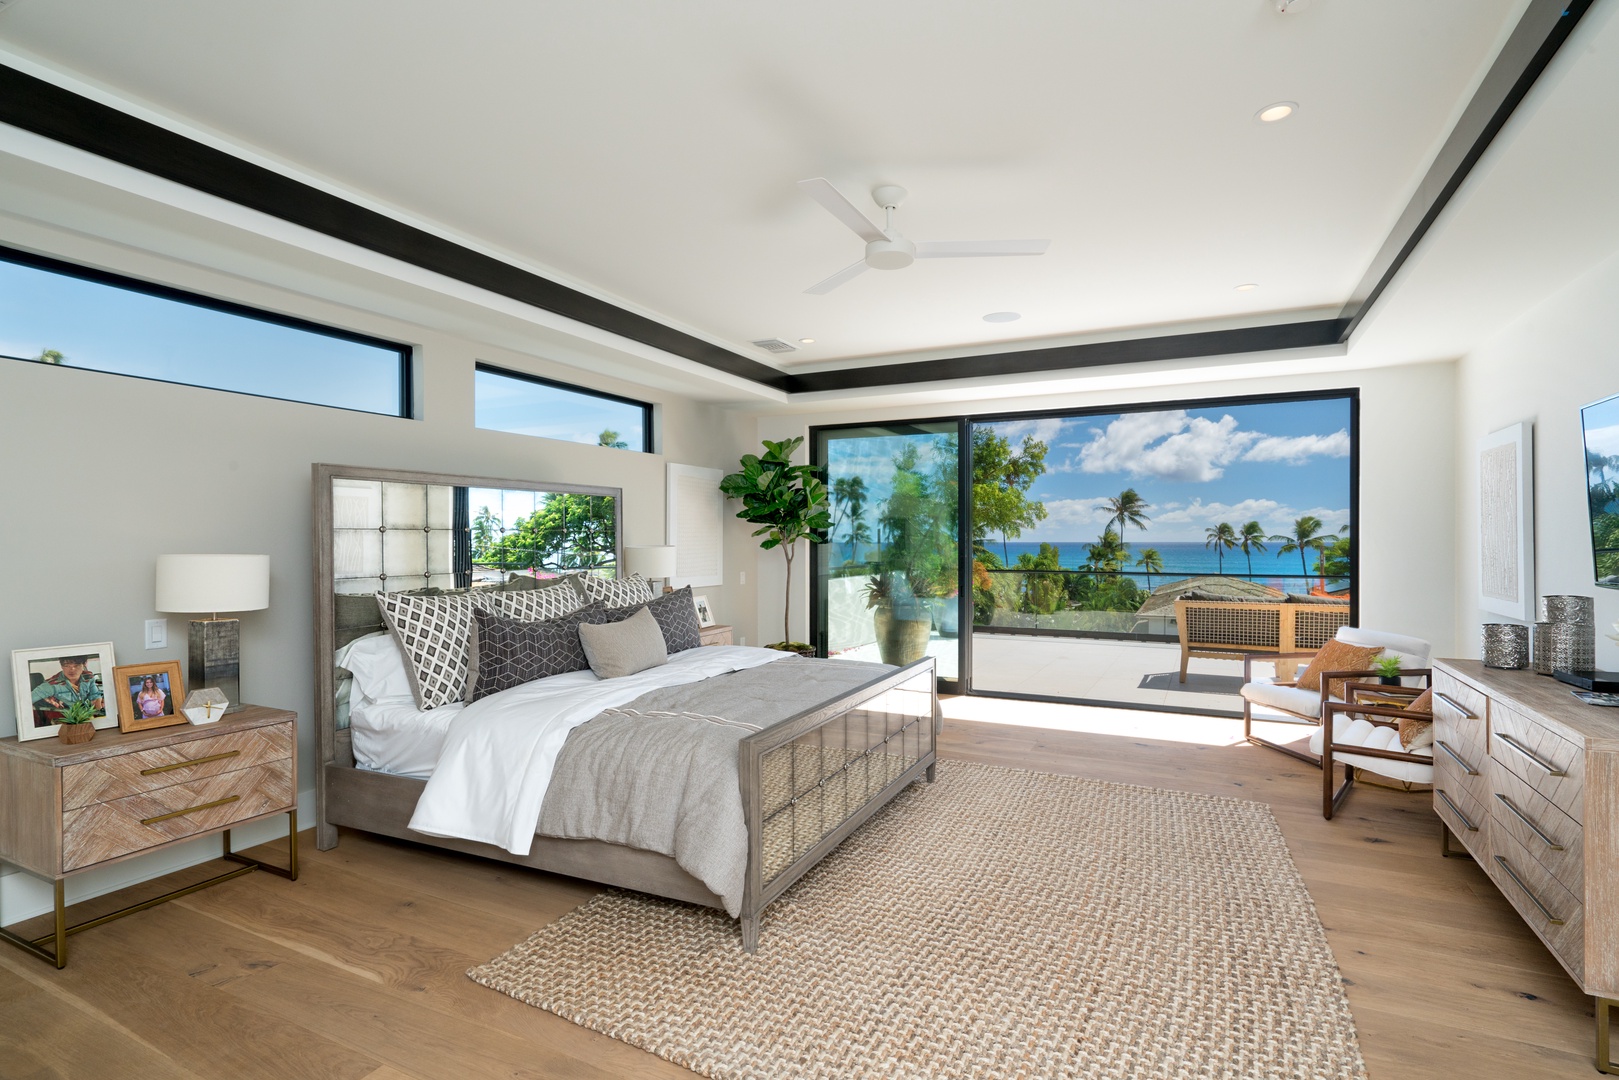 Honolulu Vacation Rentals, Diamond Head Grandeur - Primary bedroom with a king bed and ocean views